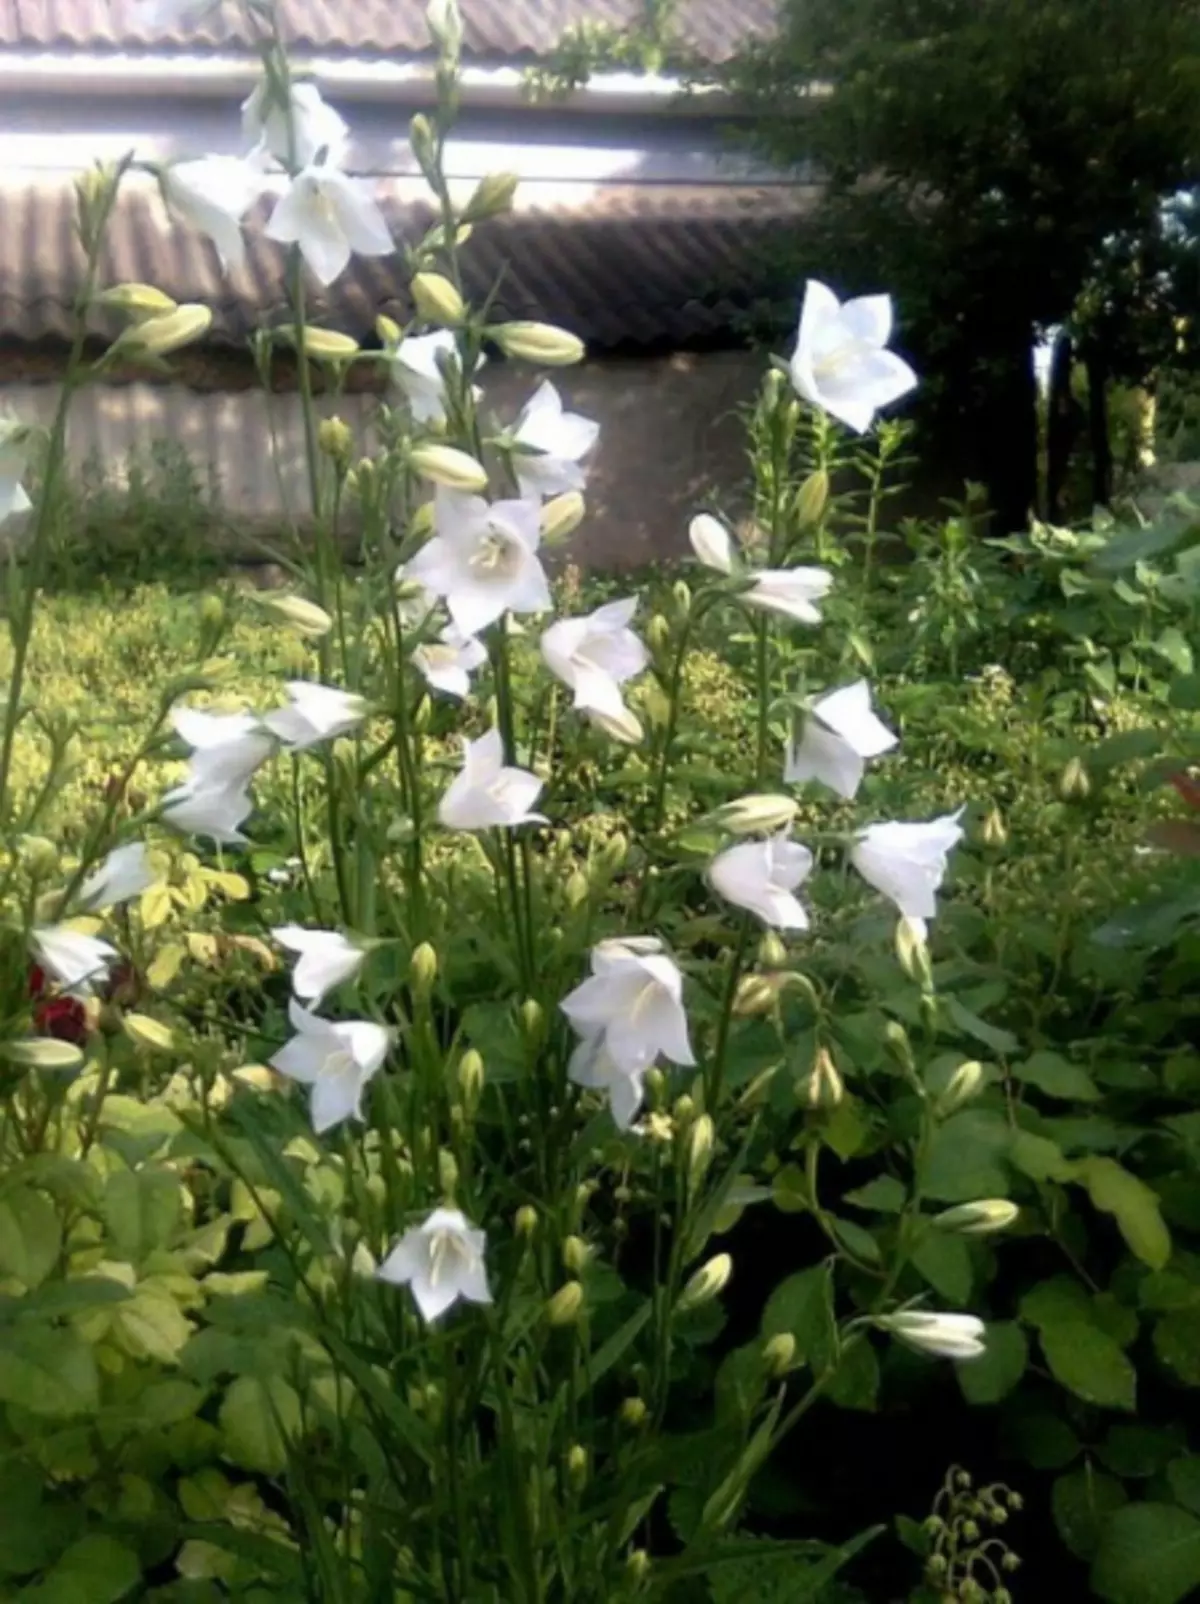 Biela záhrada: Ktoré biele kvety vložili do krajiny (85 fotografií)